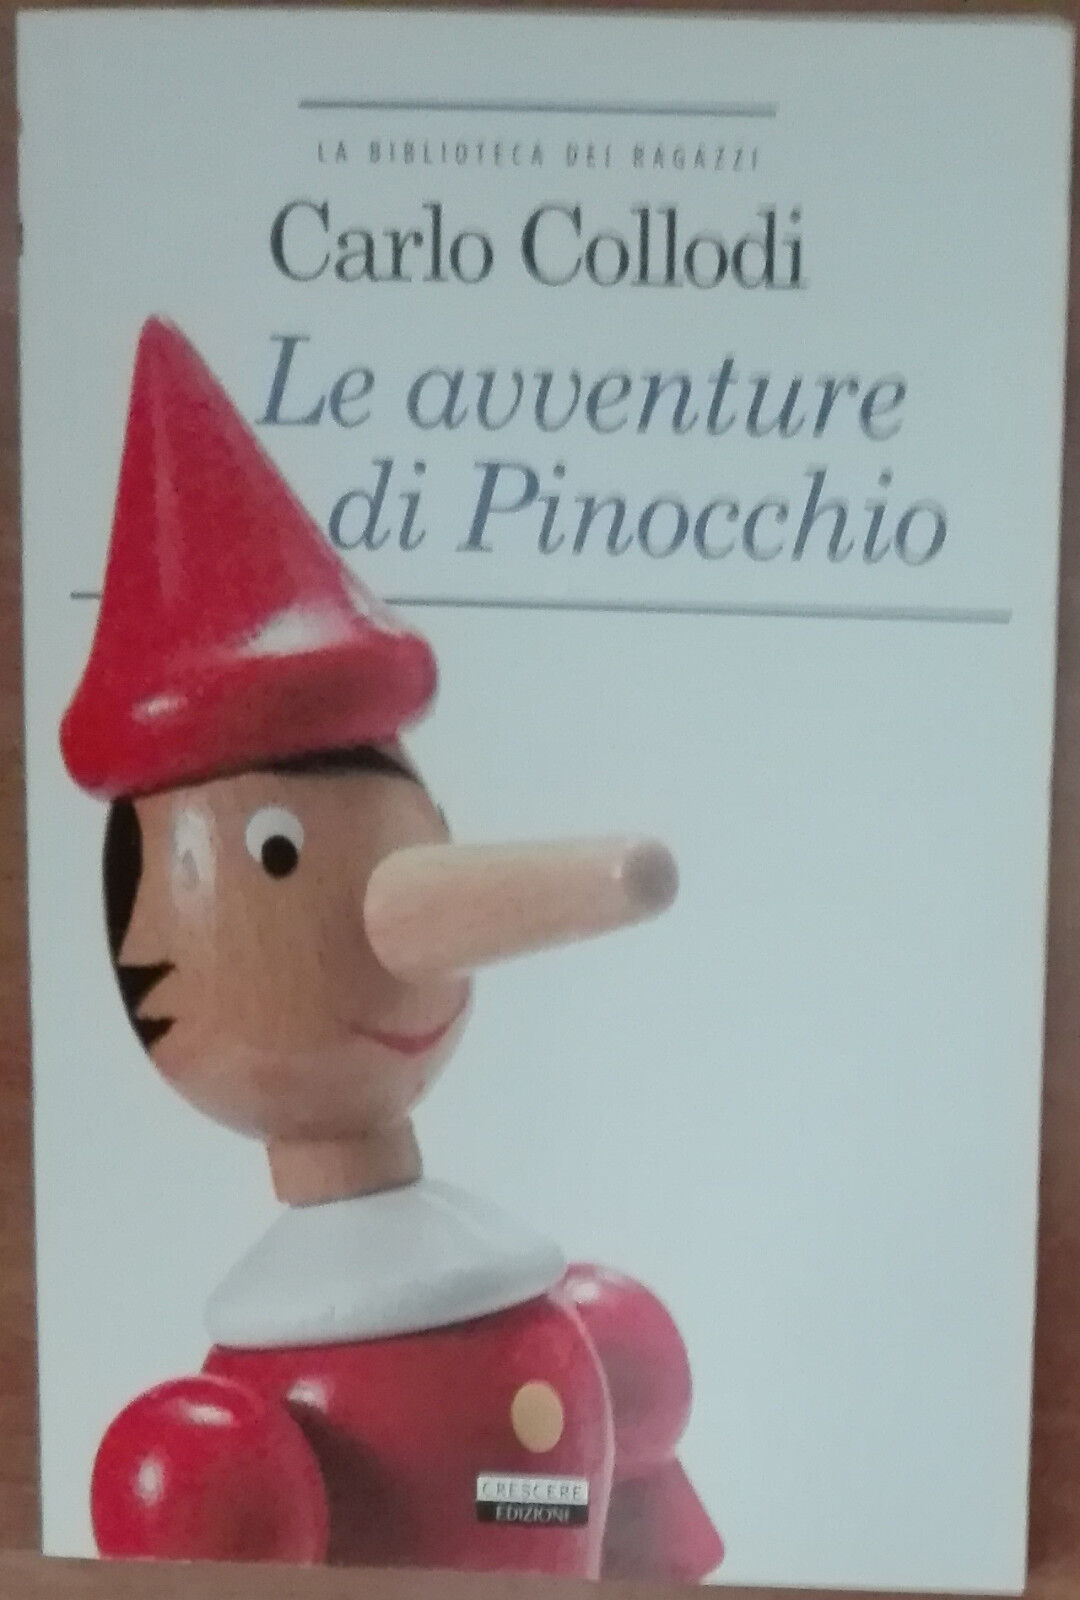 Le avventure di Pinocchio - Carlo Collodi - Crescere edizioni,2015 - A